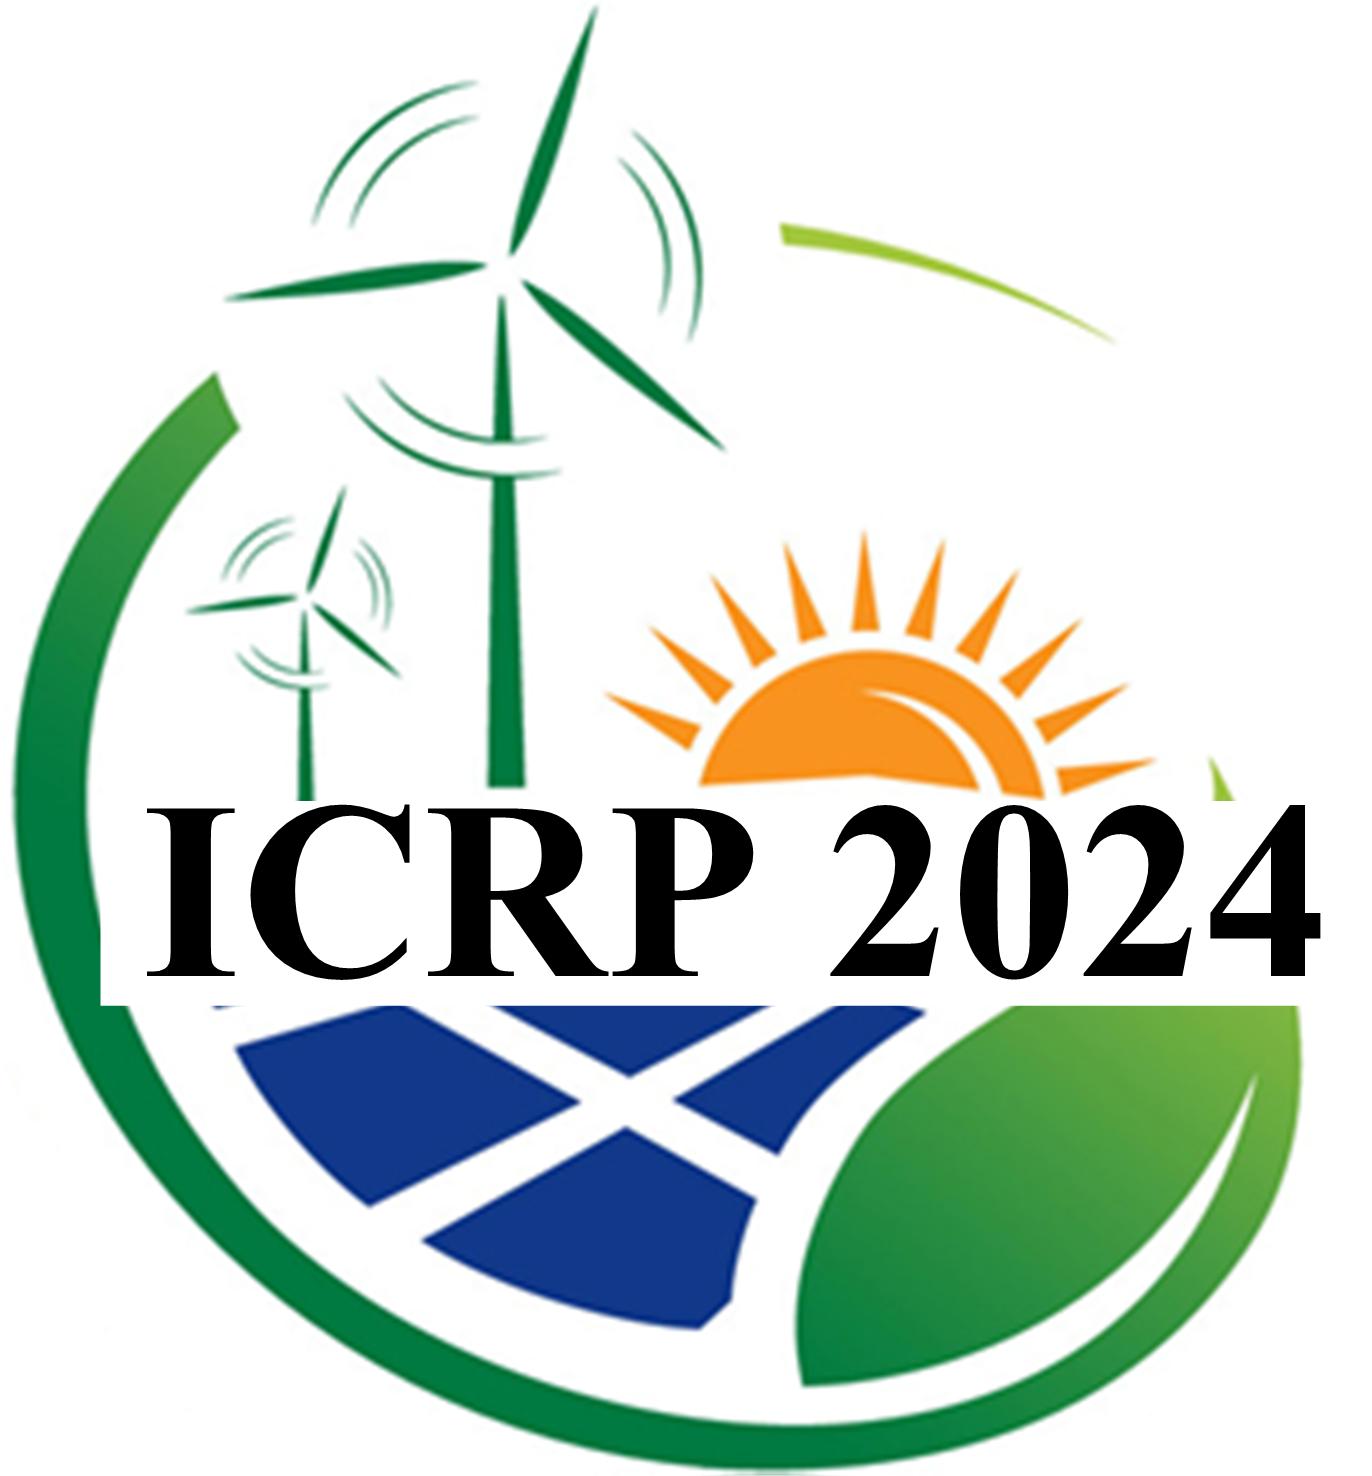 ICRP2024